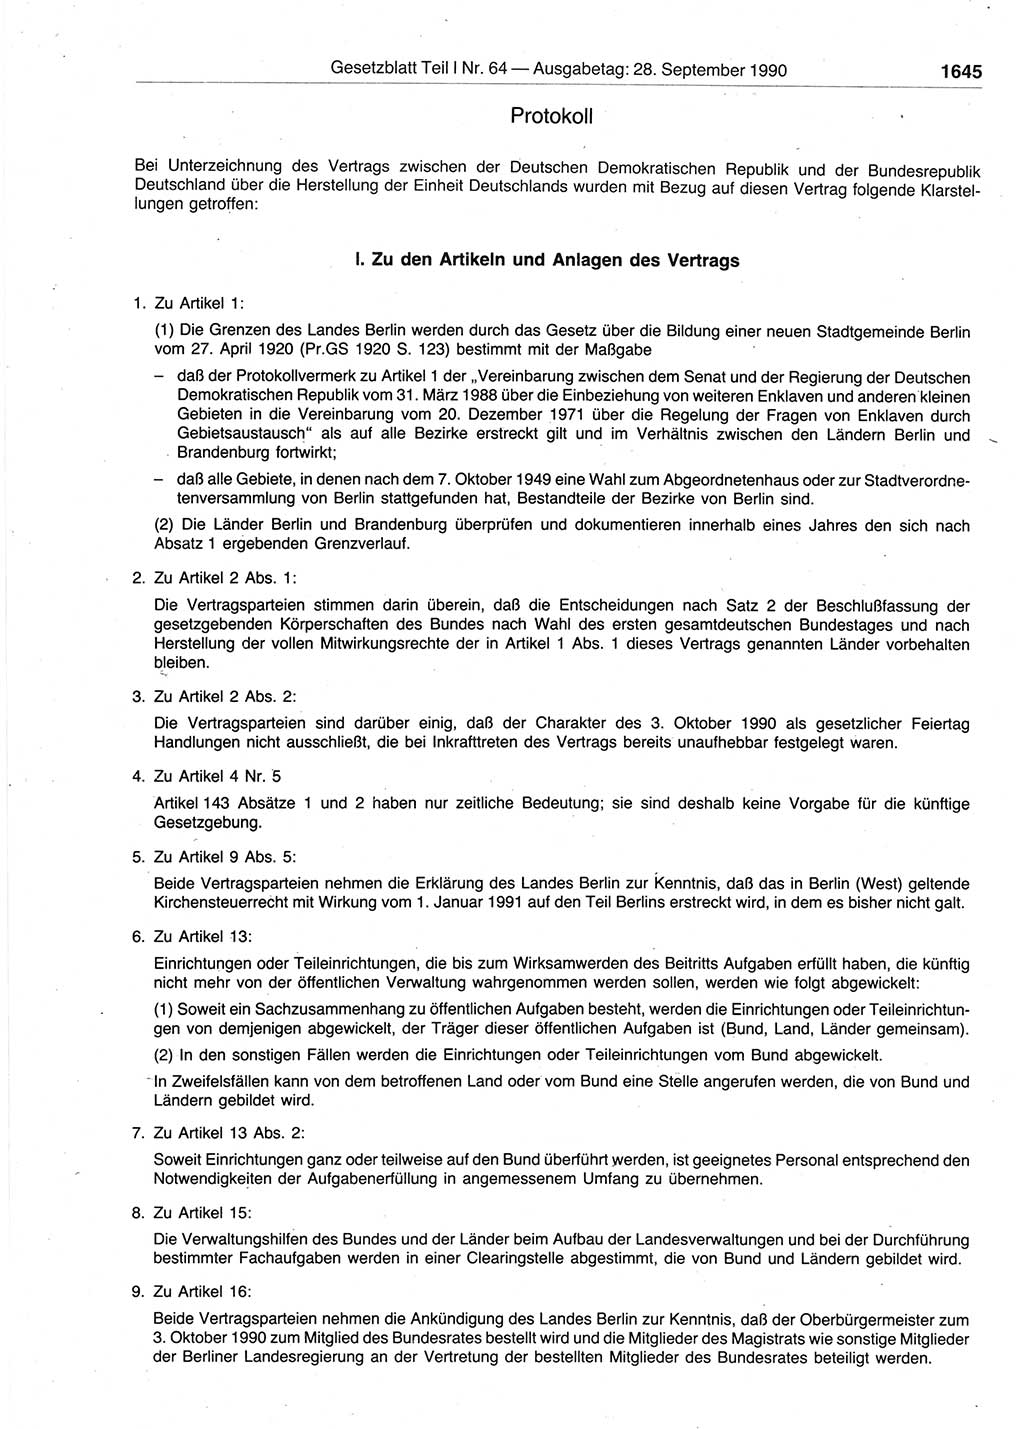 Gesetzblatt (GBl.) der Deutschen Demokratischen Republik (DDR) Teil Ⅰ 1990, Seite 1645 (GBl. DDR Ⅰ 1990, S. 1645)